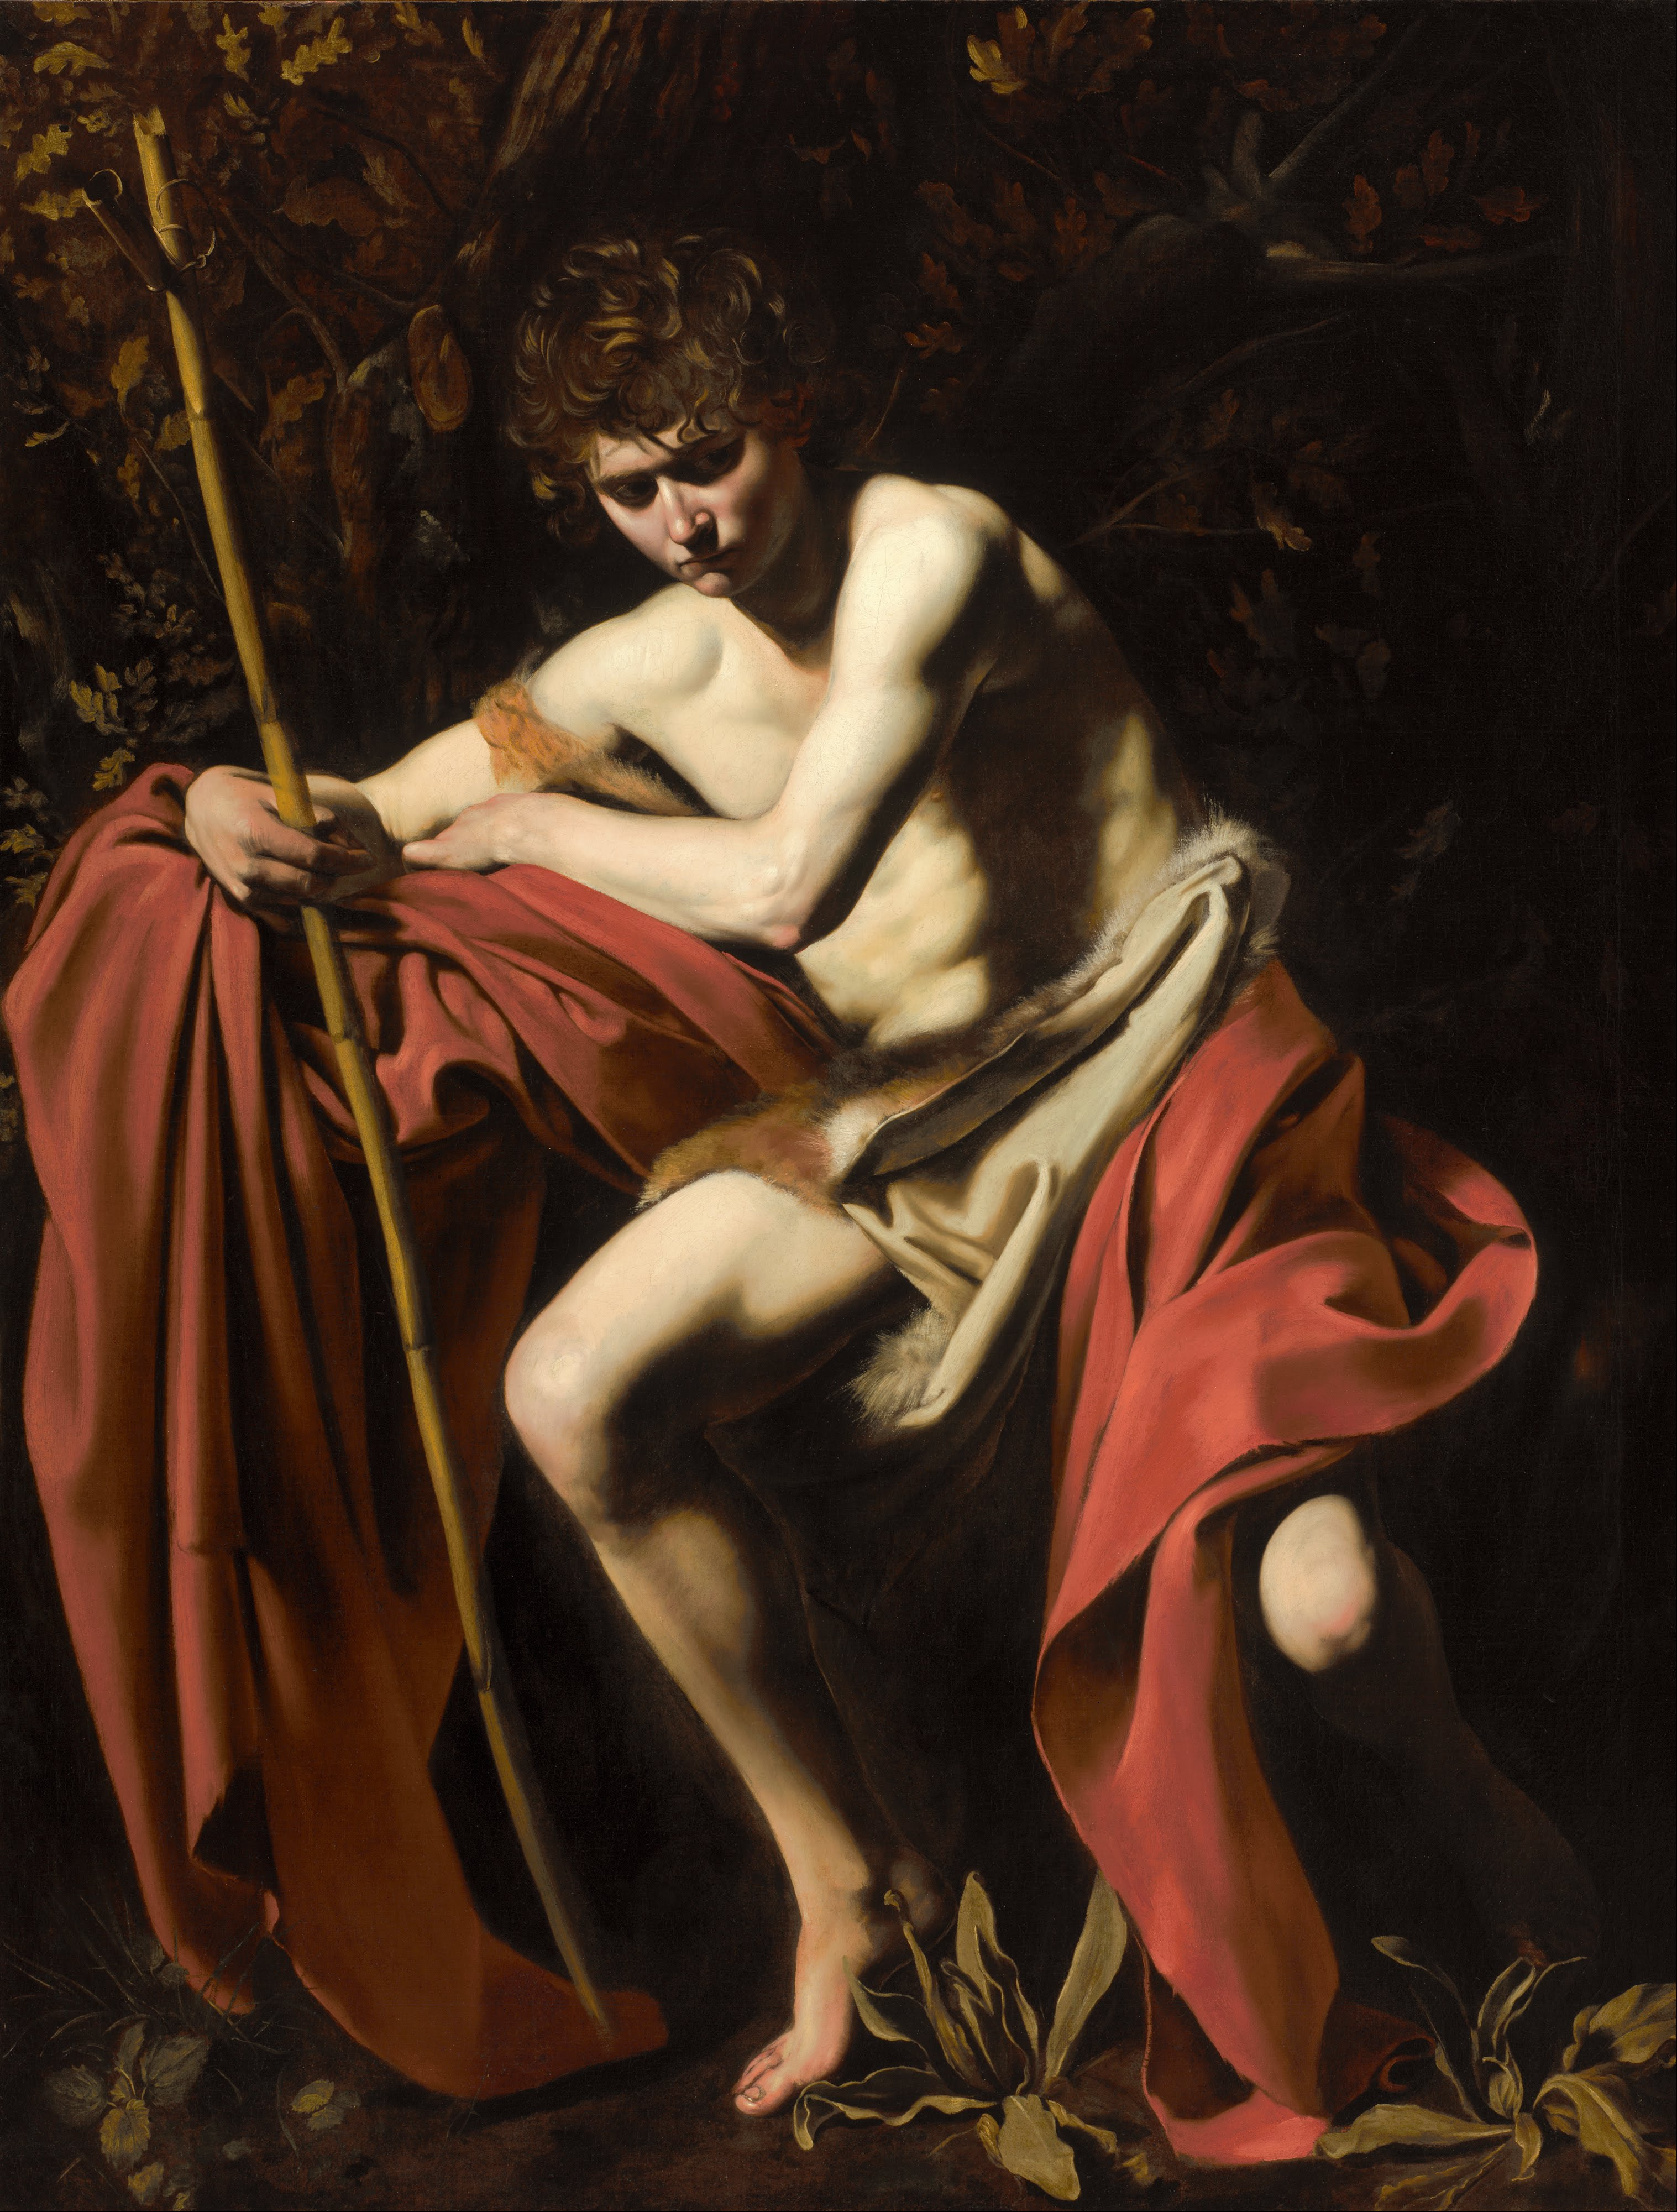 القديس يوحنا المعمدان في البرية by  Caravaggio - ميلادية 1604 حوالي - 172.72 x 132.08 سنتيمتر 